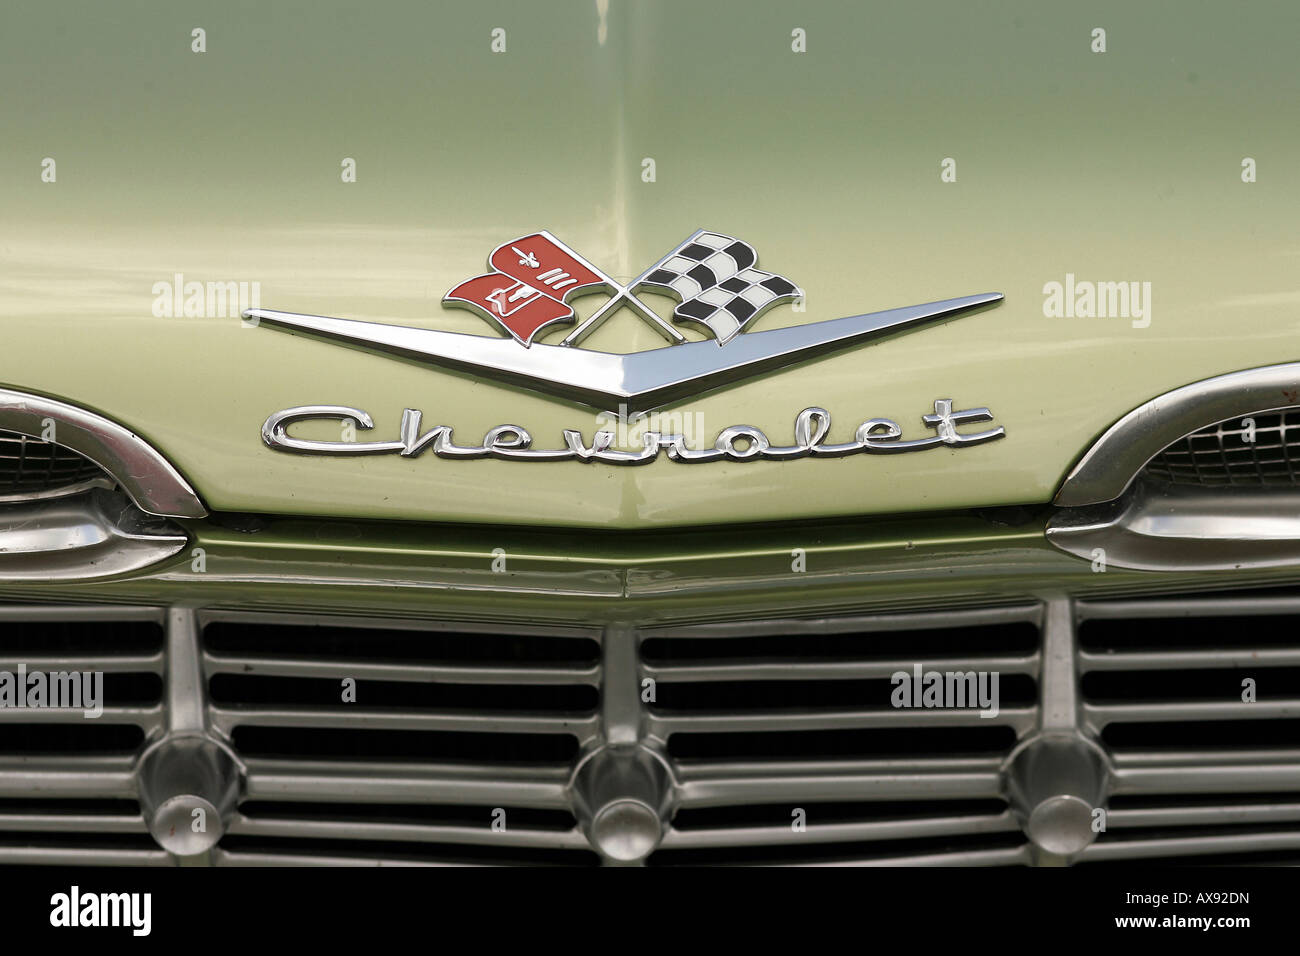 Chevrolet Corvette hood ornament Stock Photo